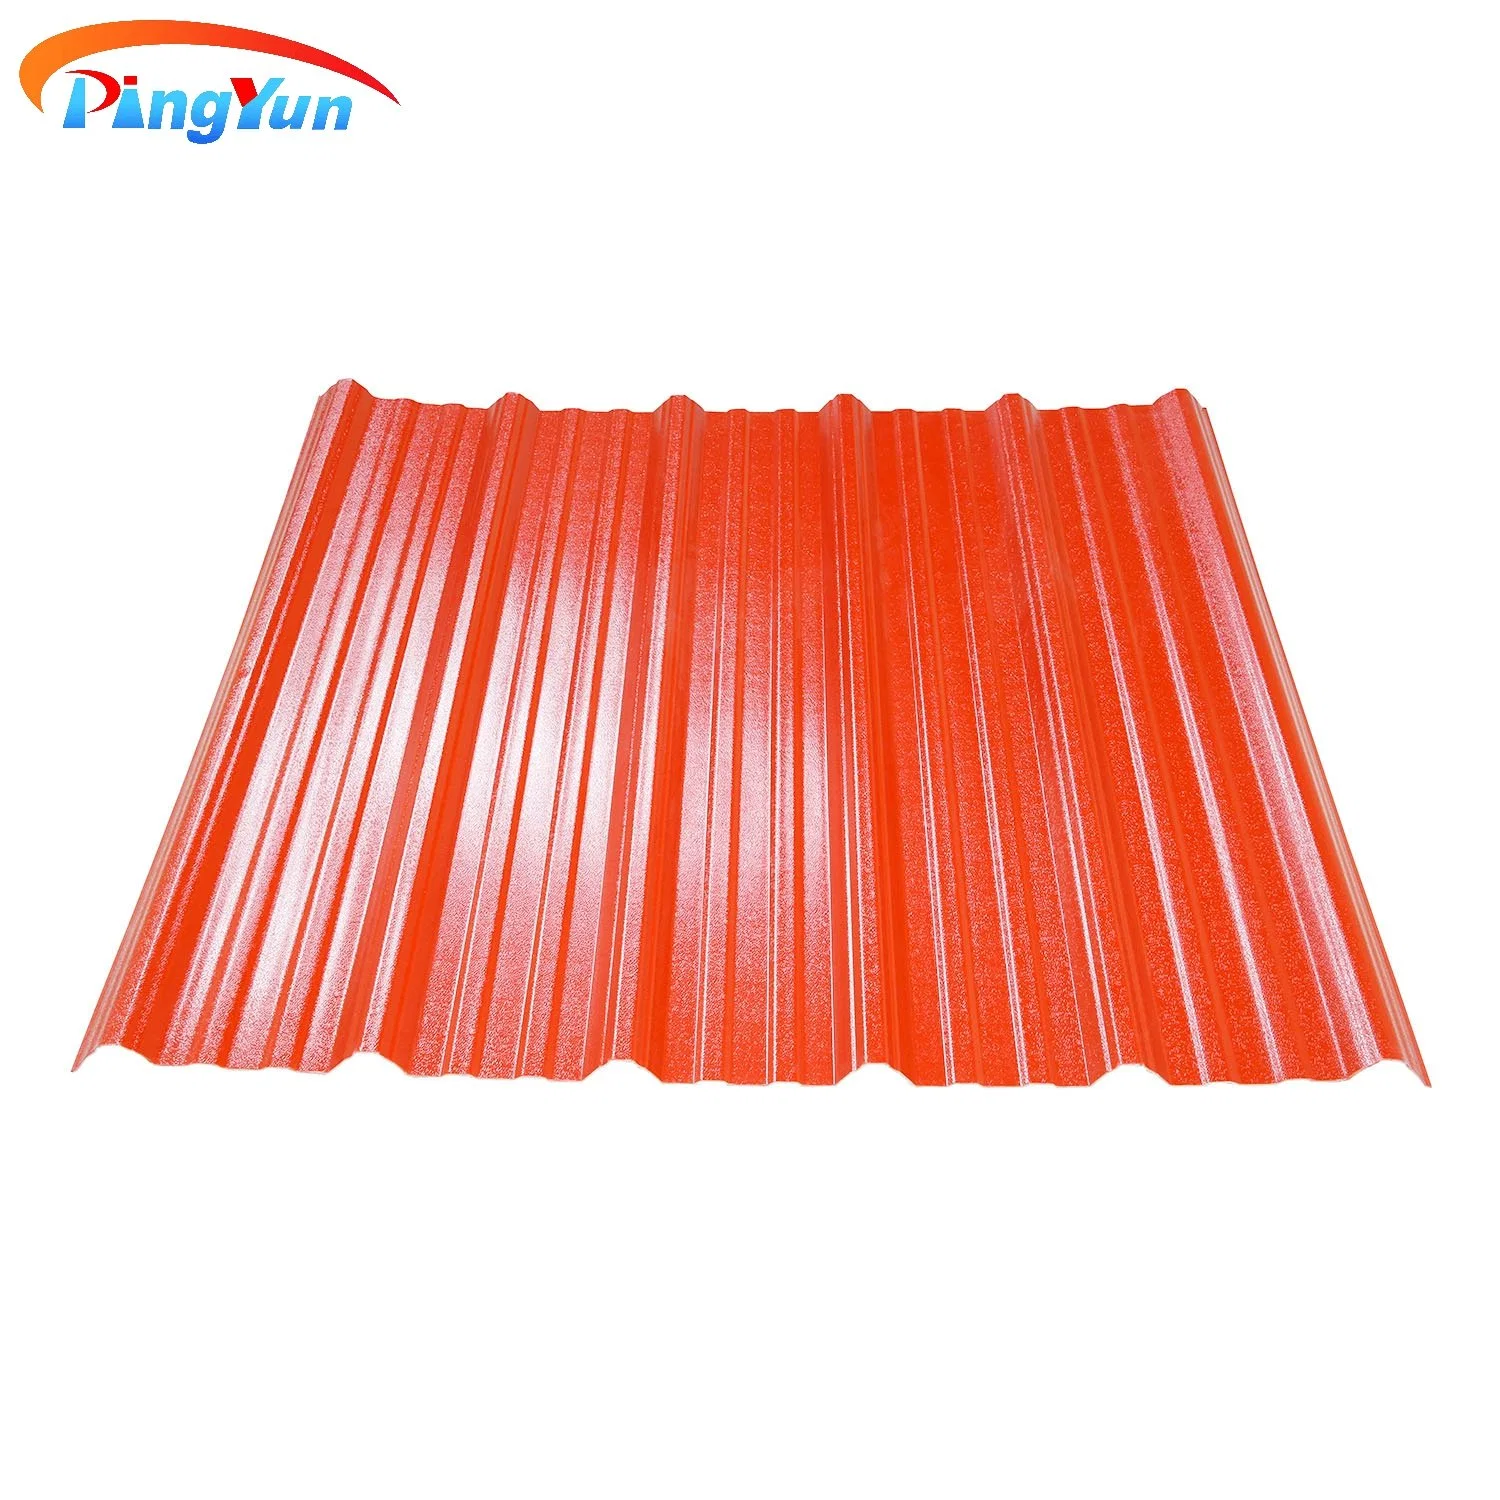 ورقة سقف من مادة PVC مانعة للتآكل لسقف المواد البلاستيكية العازلة للحرارة/الصناعية الكيميائية ورقة